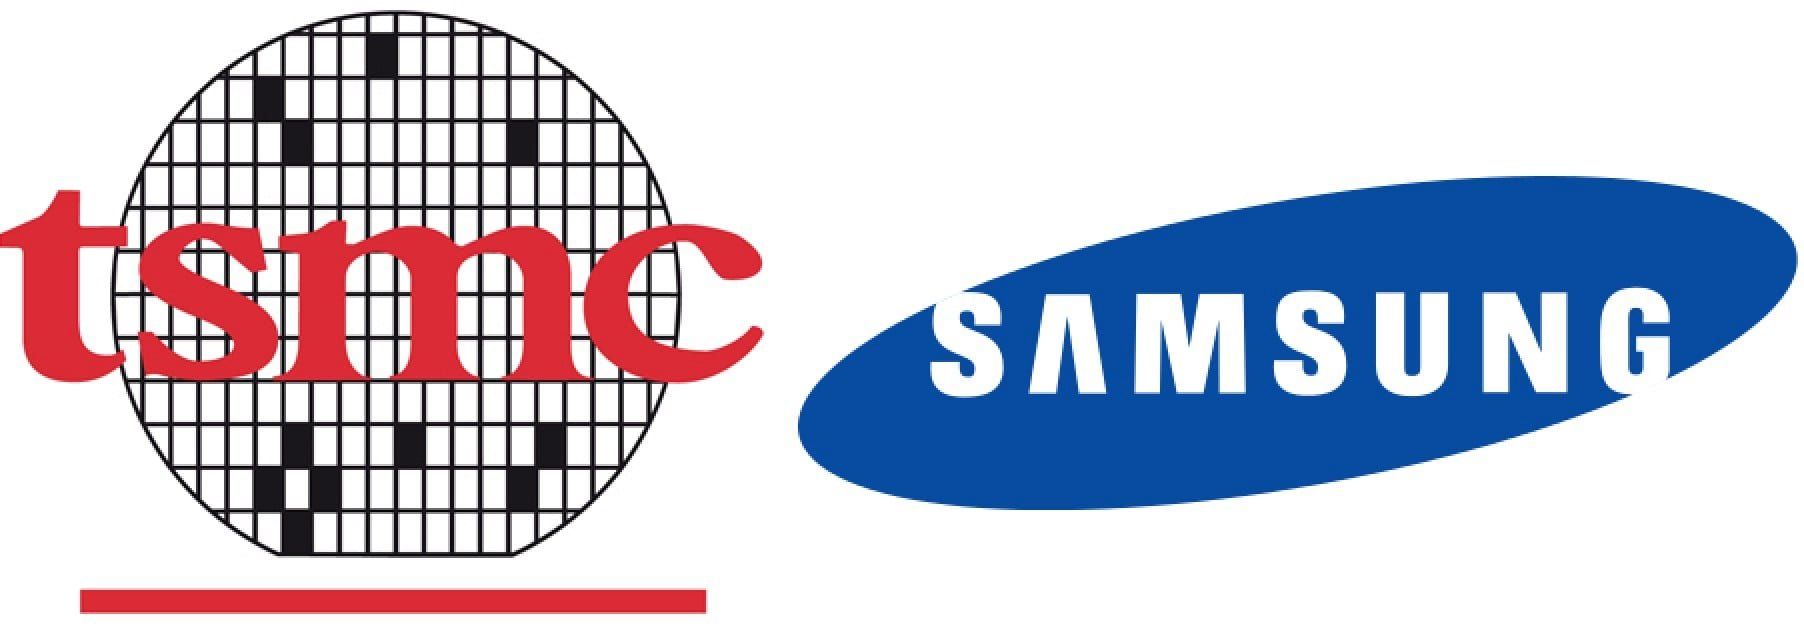 TSMC Samsung logo